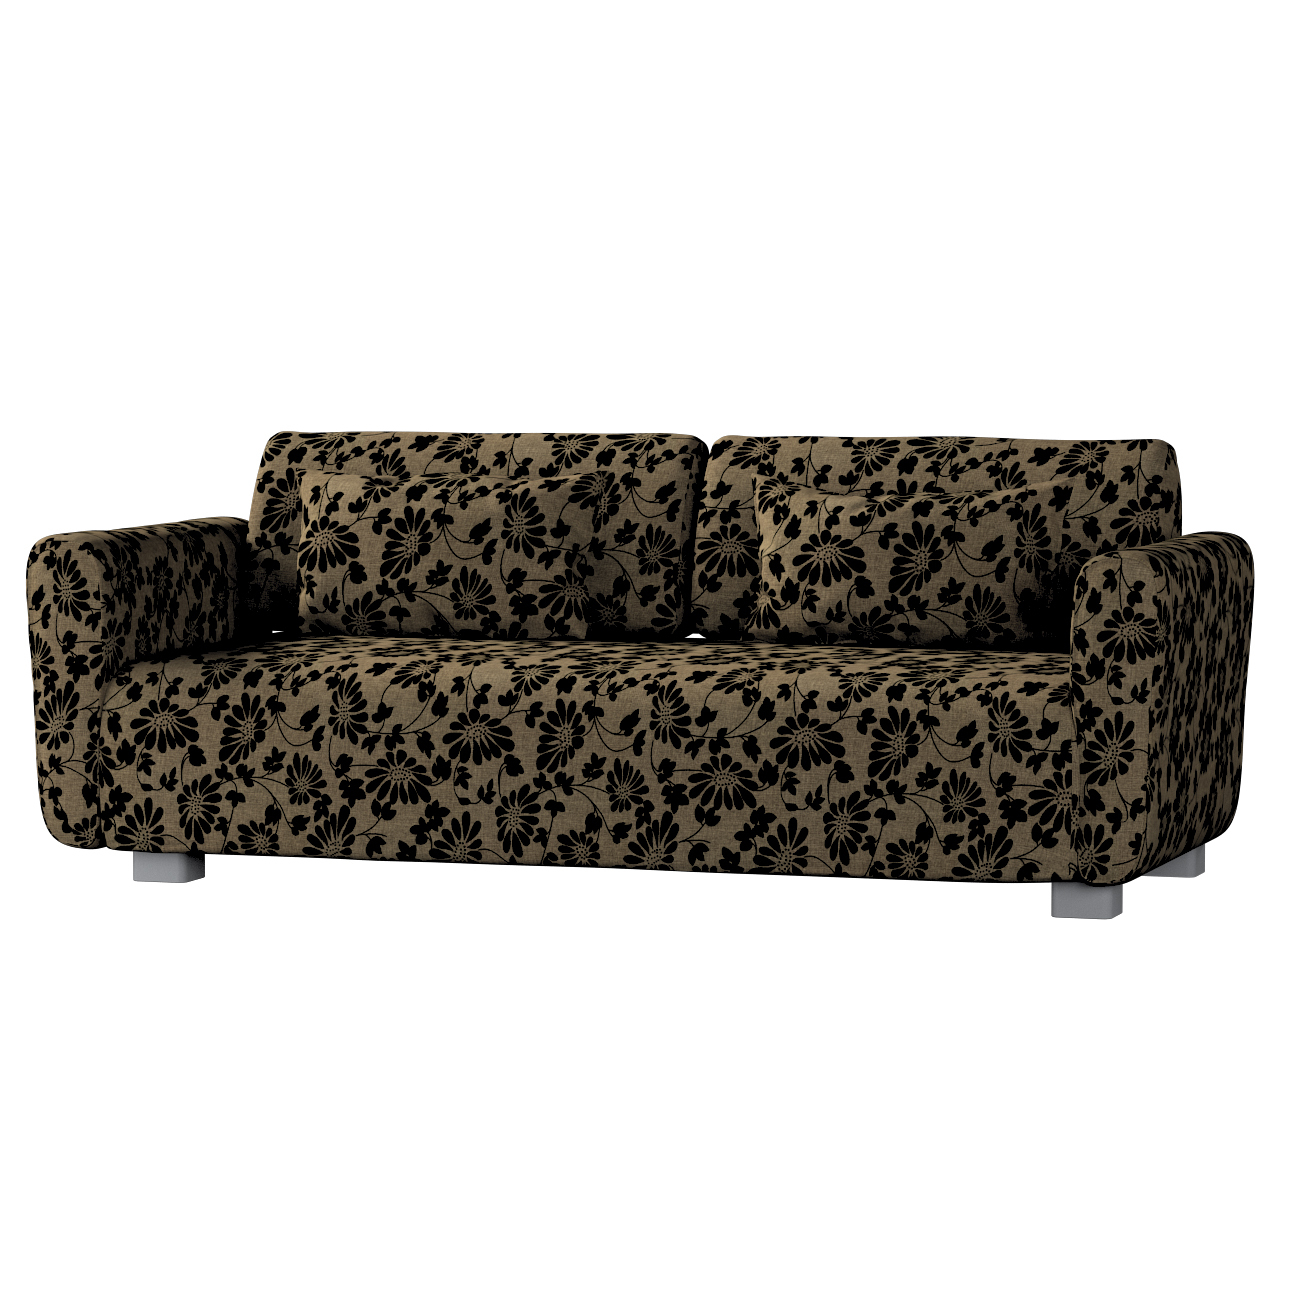 Bezug für Mysinge 2-Sitzer Sofa, beige-schwarz, Sofabezug Mysinge 2-Sitzer, günstig online kaufen